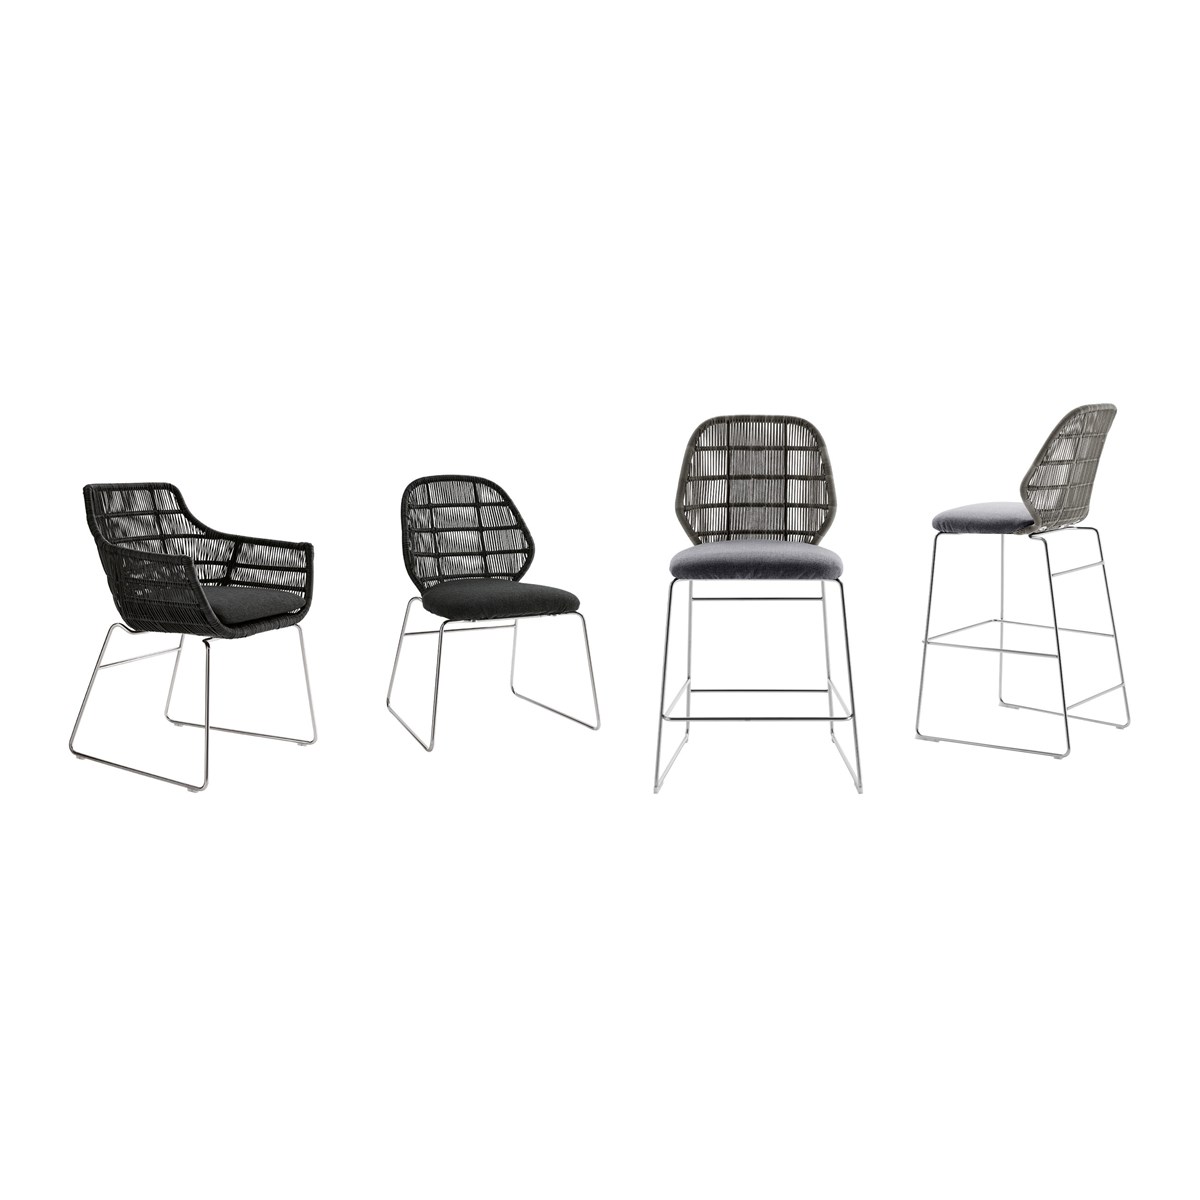 Thisslider 0 106 Outdoor Chair Crinoline 02 1